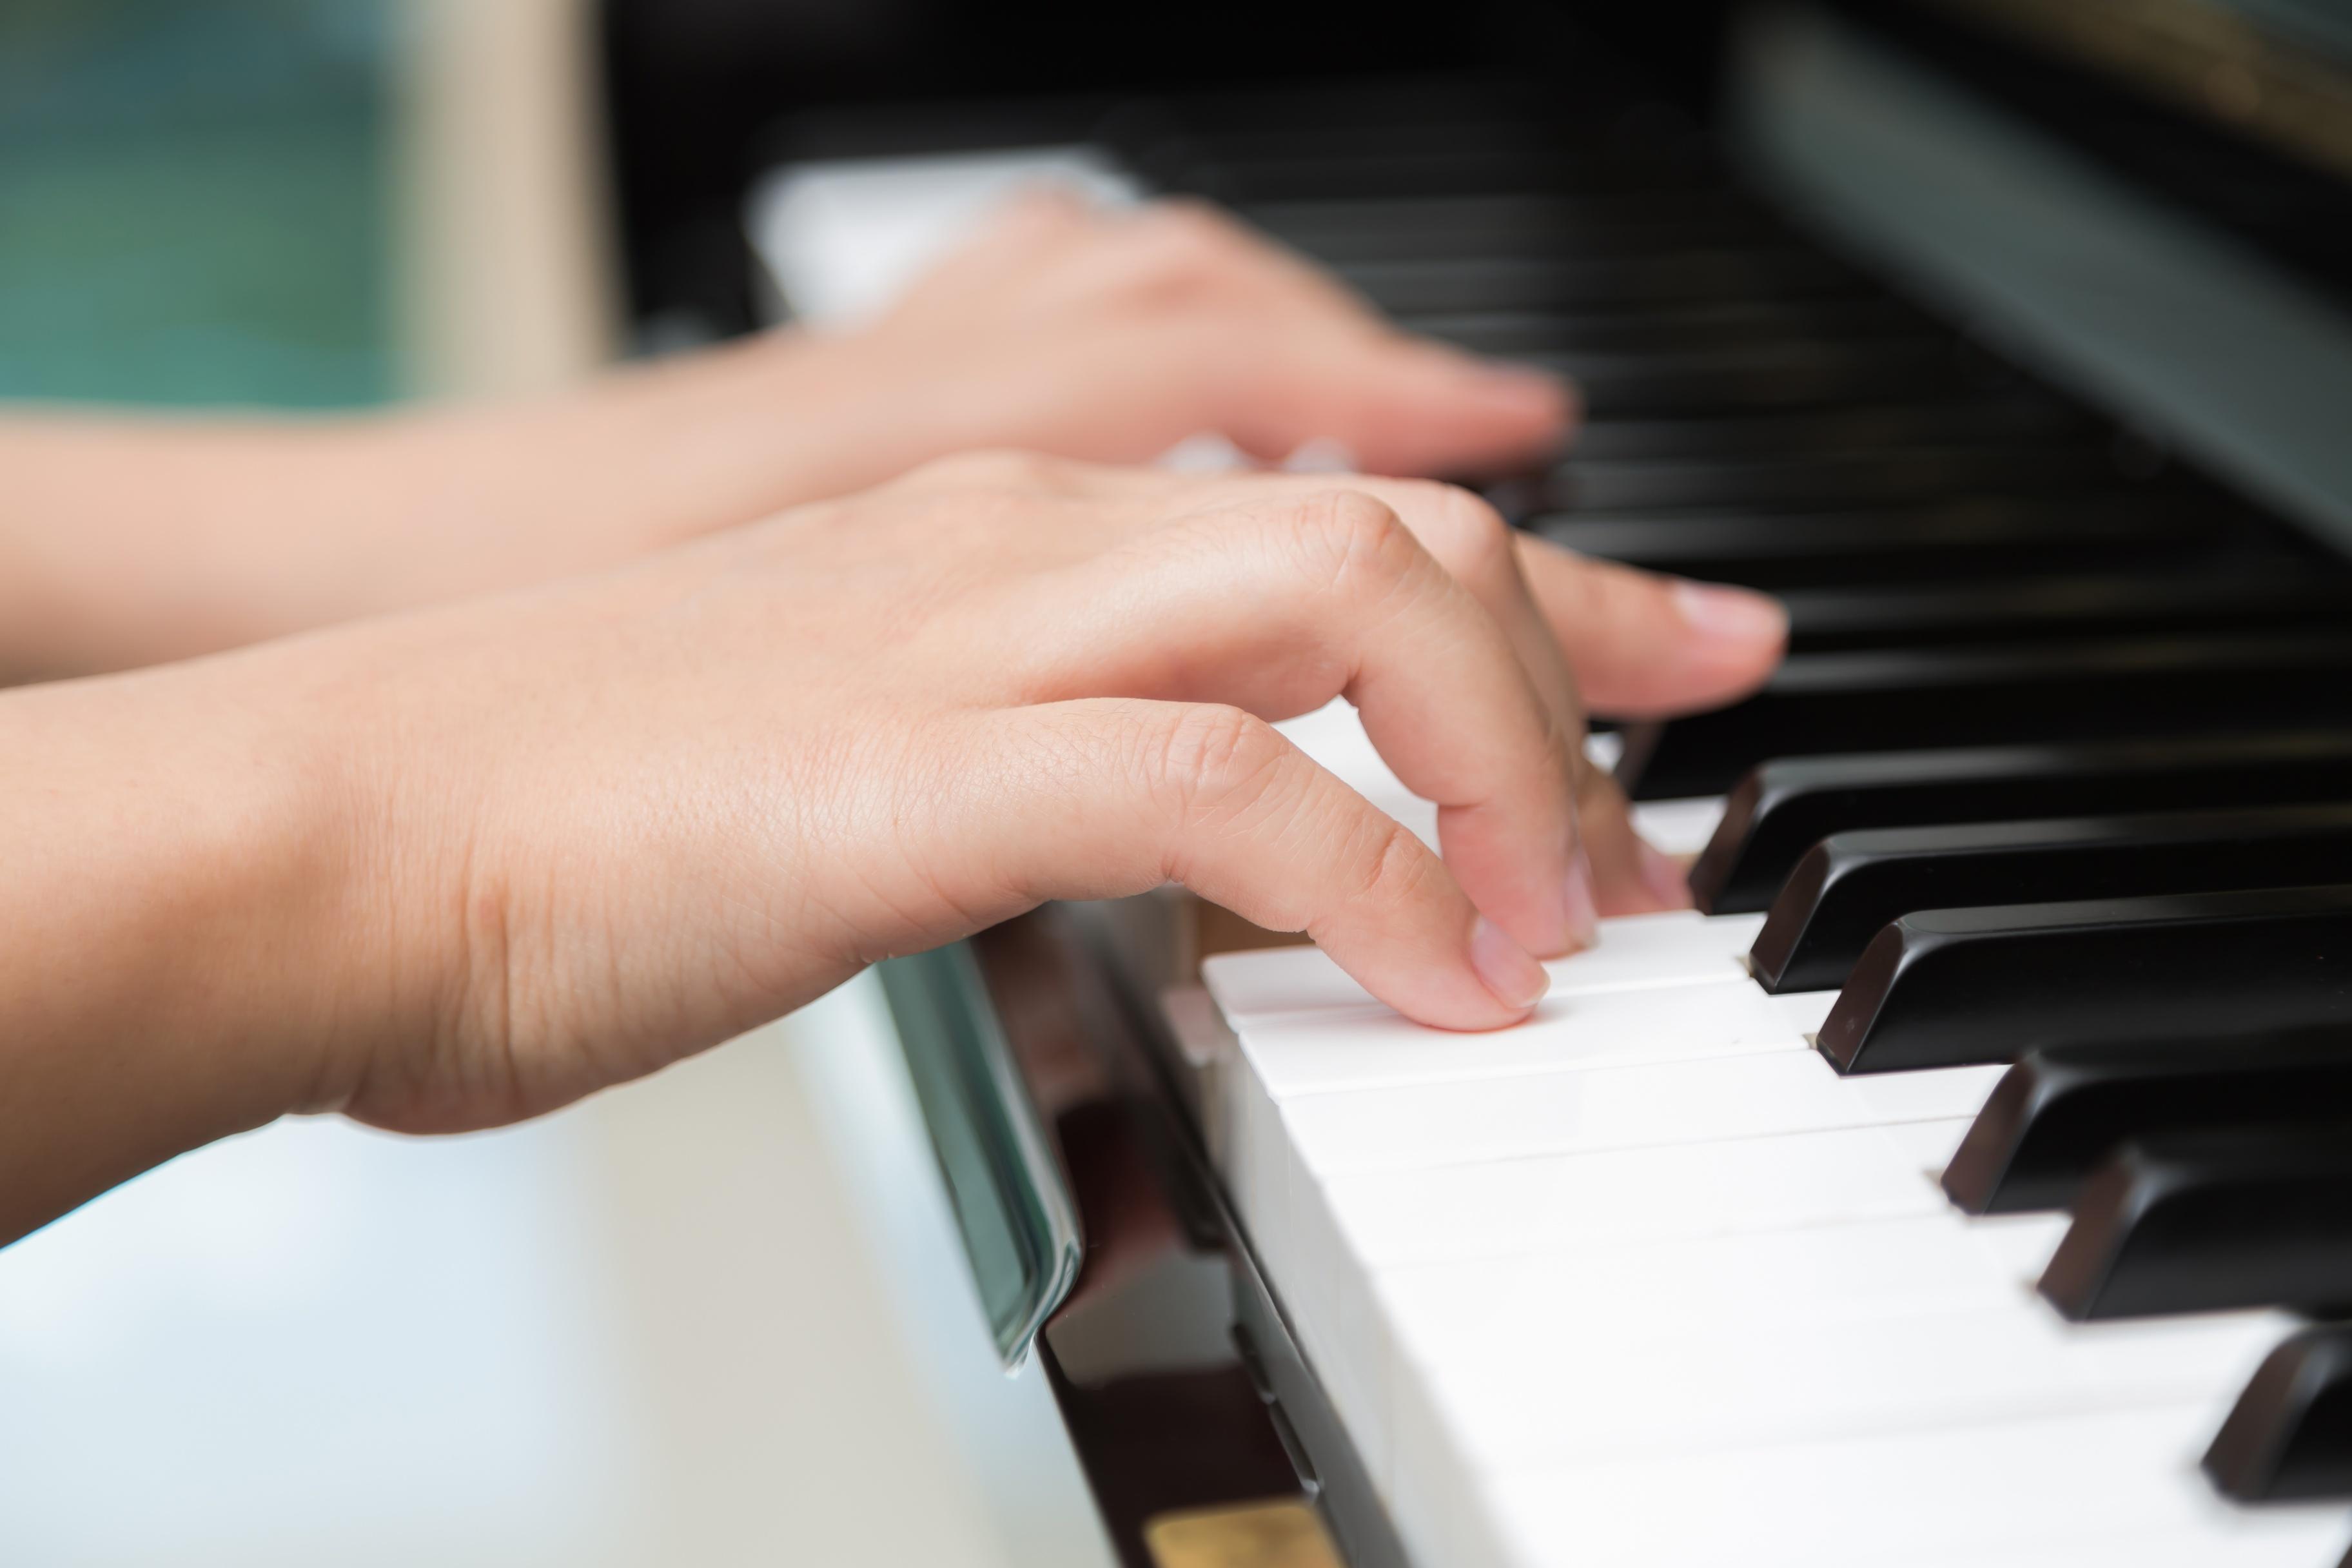 Игры пианино руками. Пианино фабрики Тульская гармонь. Фортепиано. Женские руки на клавишах. Пальцы на фортепиано.